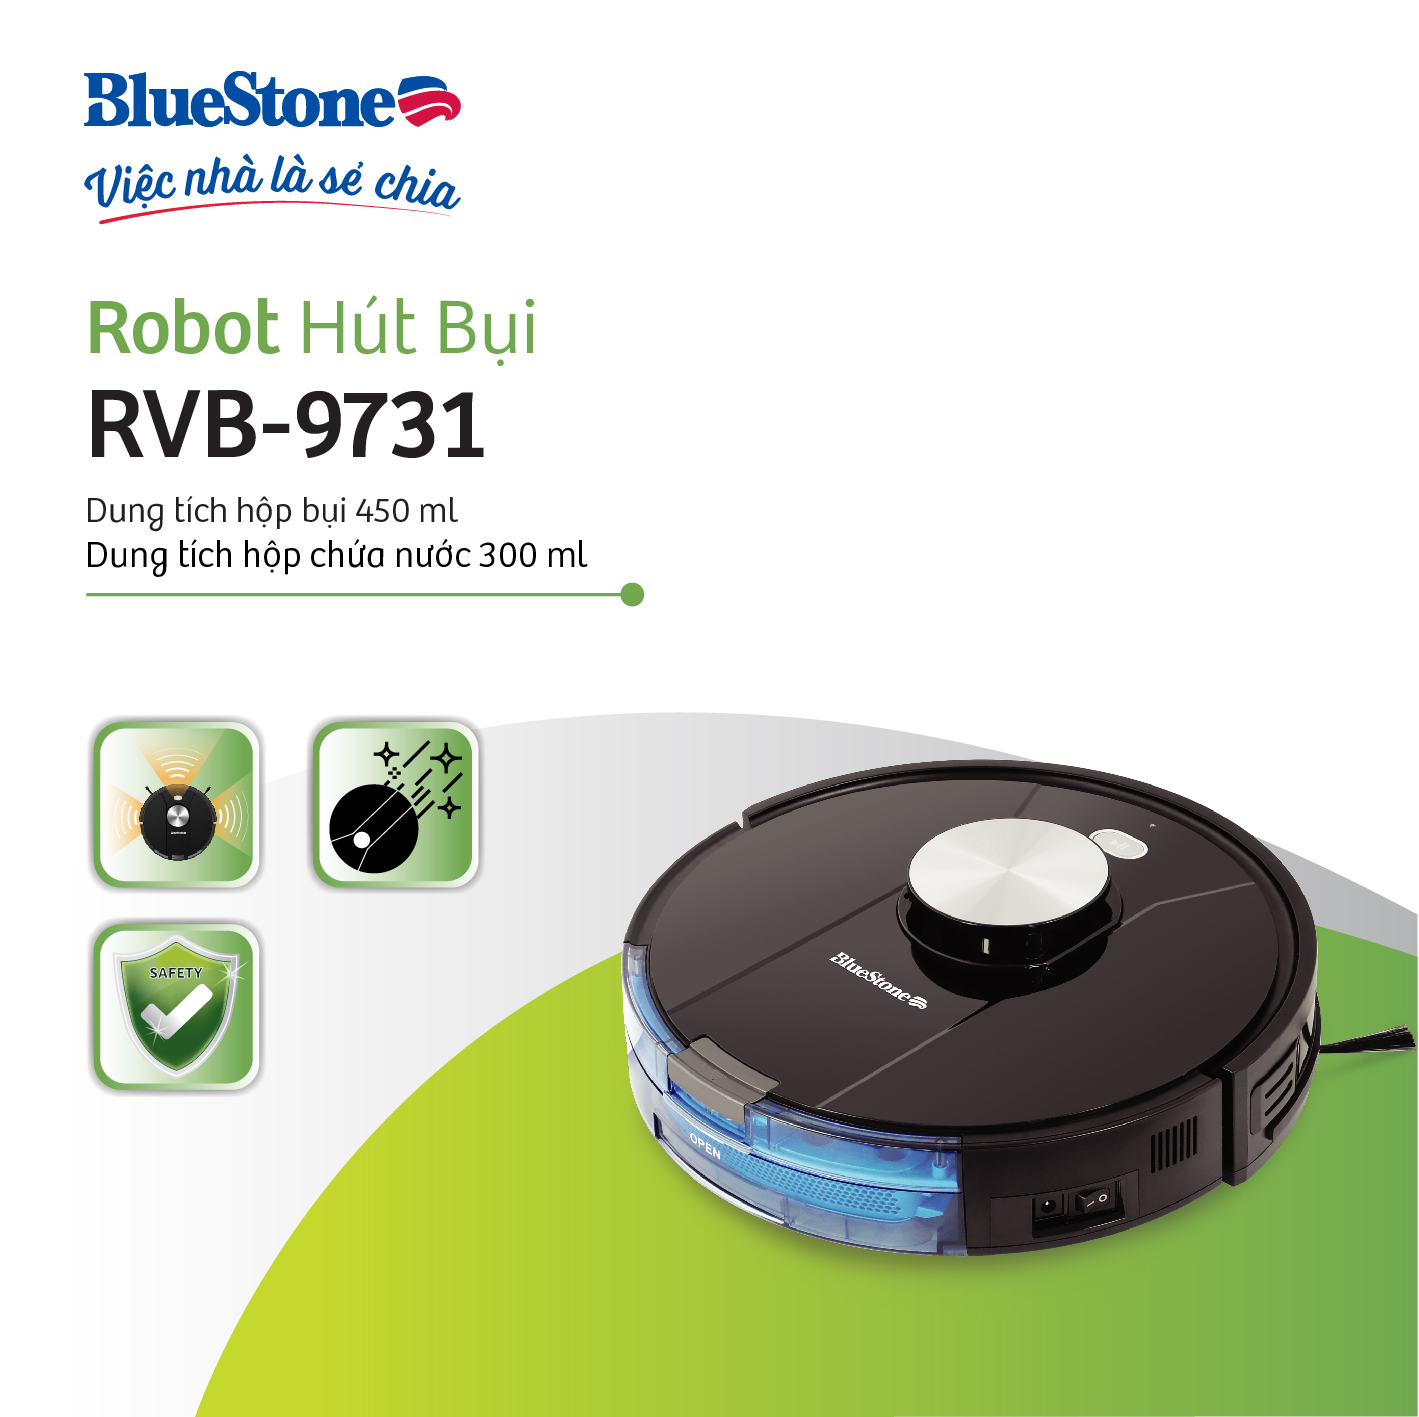 [Trả Góp 0%] Robot Hút Bụi Lau Nhà BlueStone RVB-9731 - Lực hút: 2000Pa - Bảo hành 24 tháng - Hàng chính hãng